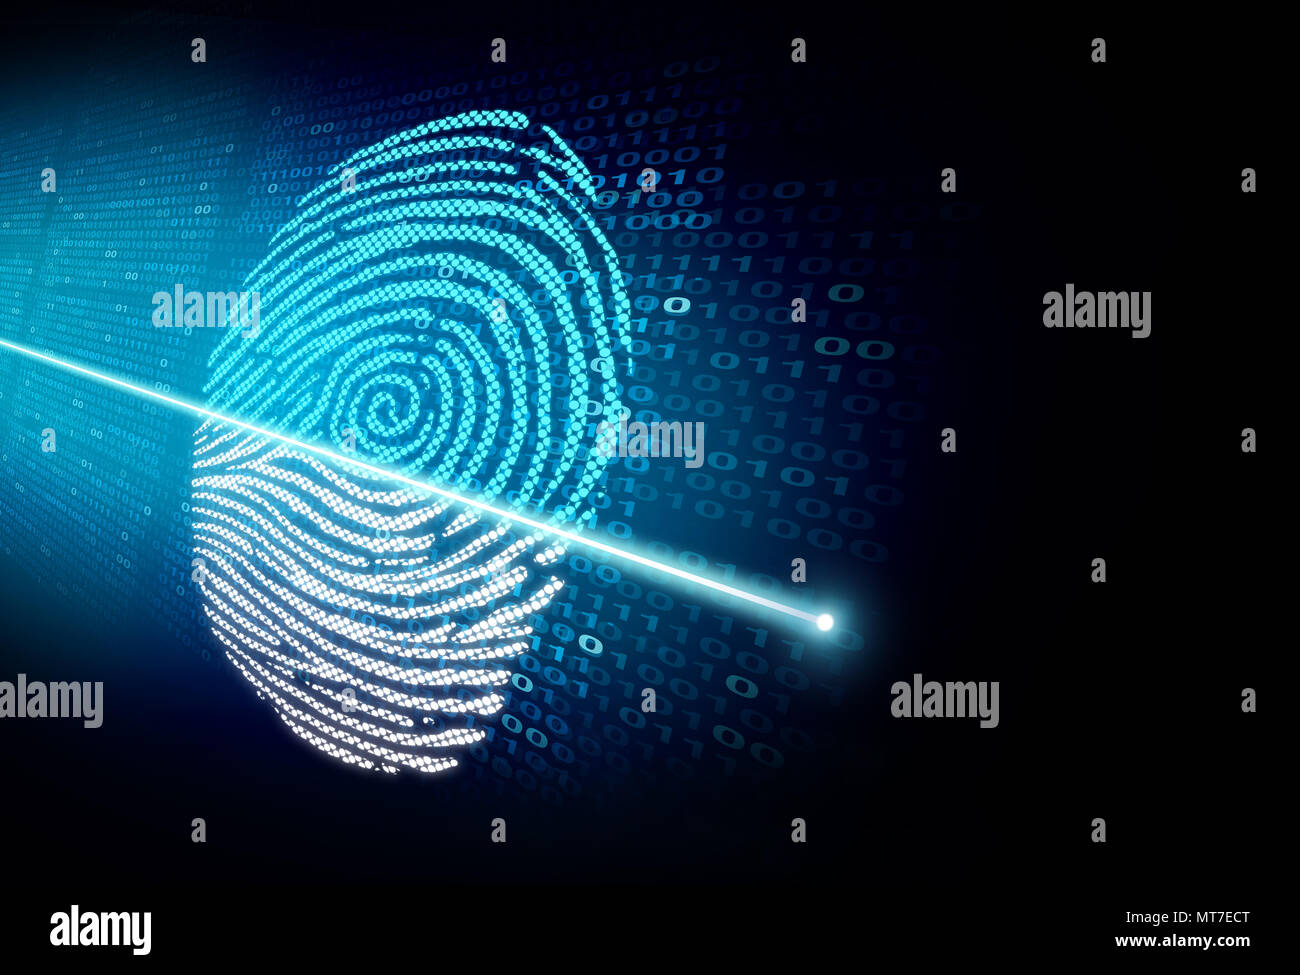 Scan de sécurité et d'authentification de cybersécurité comme une reconnaissance de la biométrie et la technologie d'accès à un concept 3D illustration style. Banque D'Images